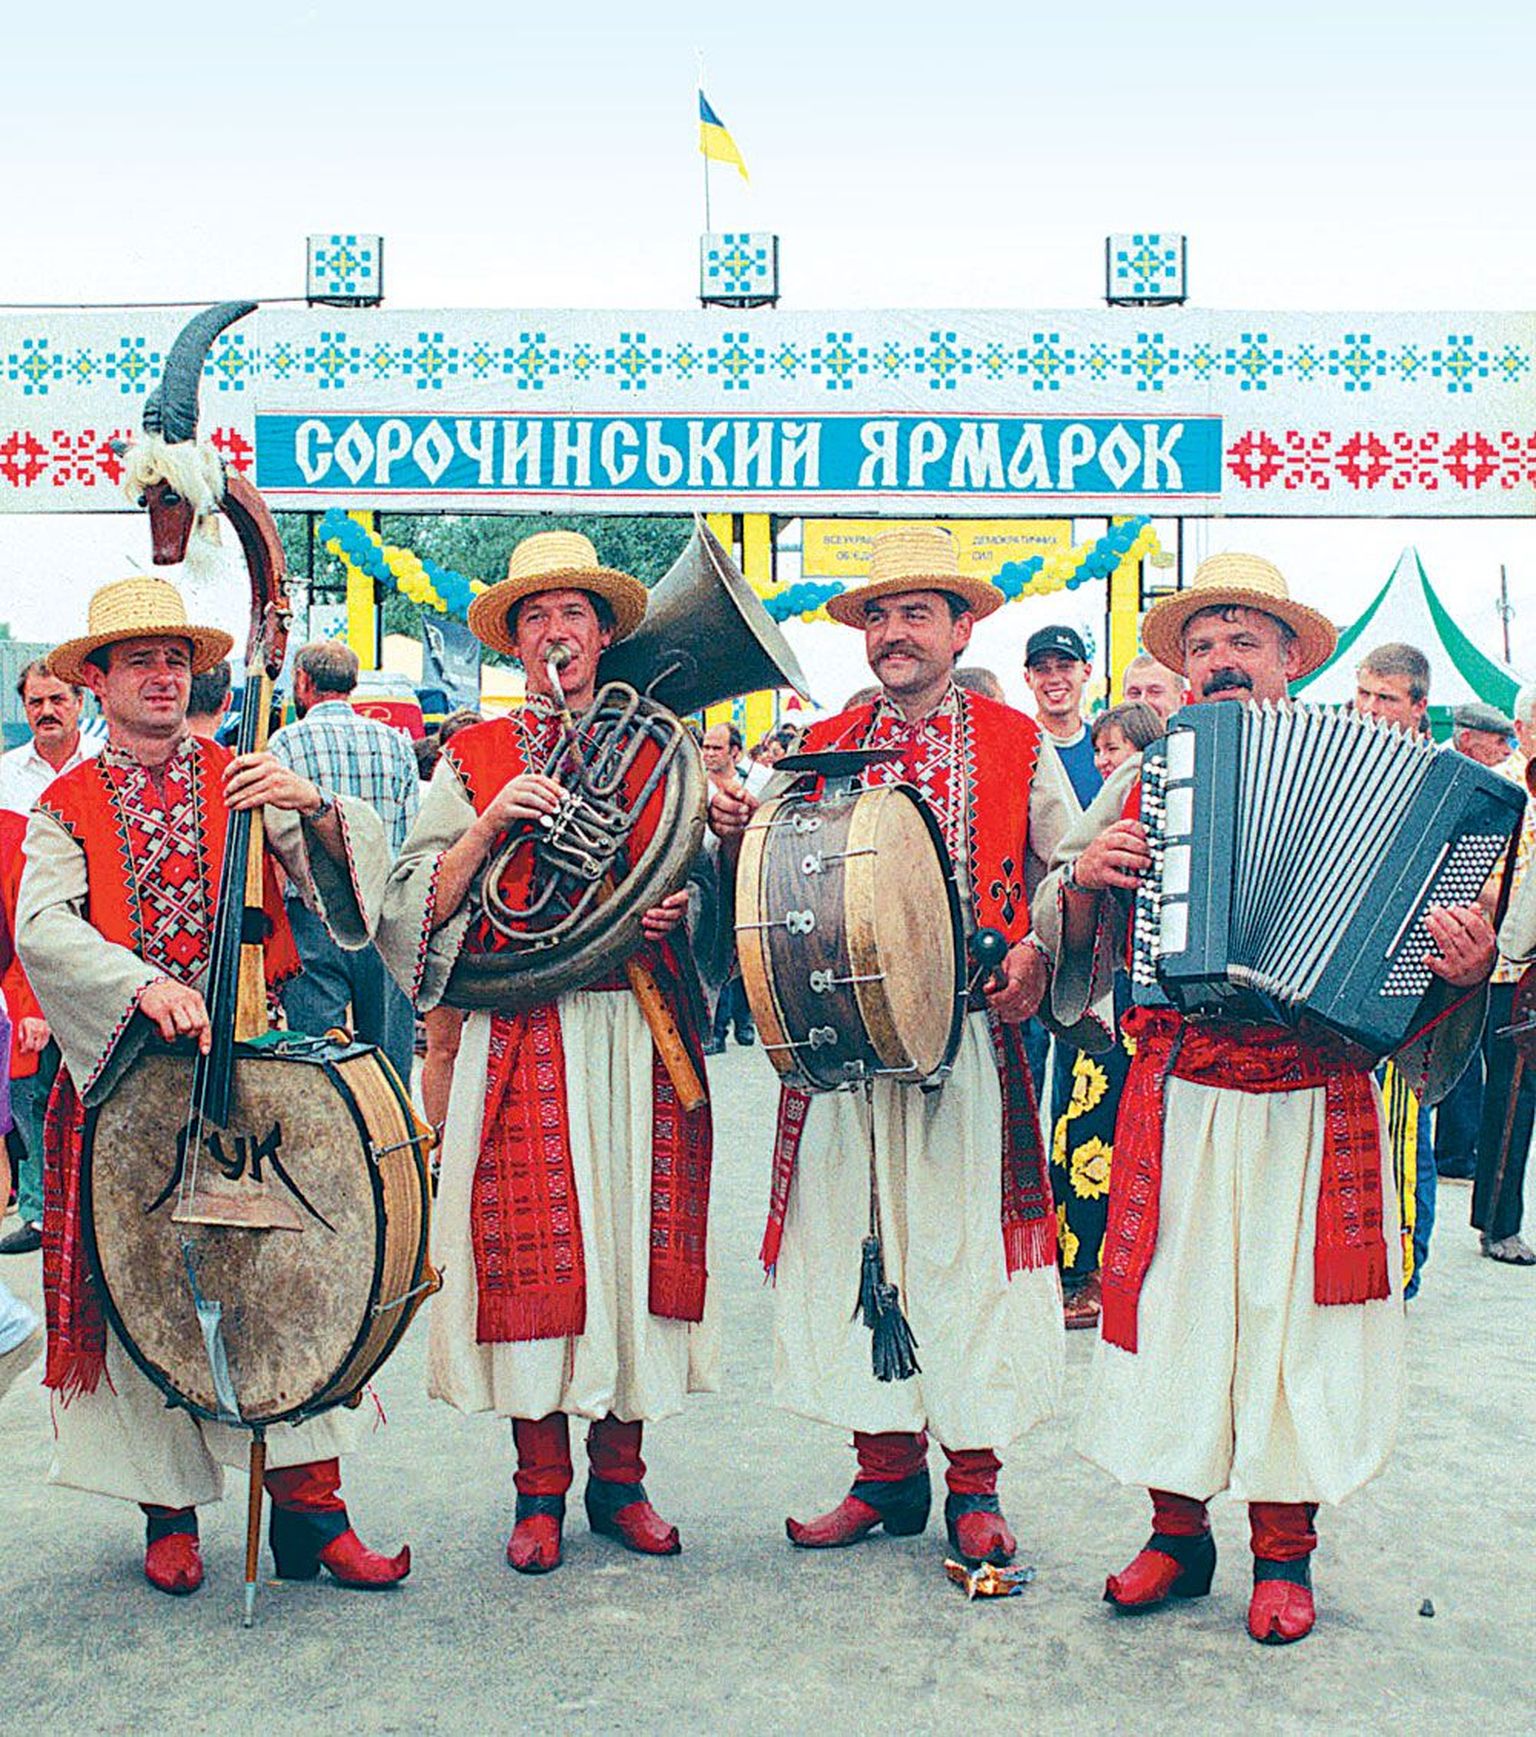 Eesti on ainuke riik väljaspool Ukrainat, kus peetakse Sorotšintsõ laata. Originaallaata korraldatakse Poltava oblastis Bolšije Sorotšintsõ külas.